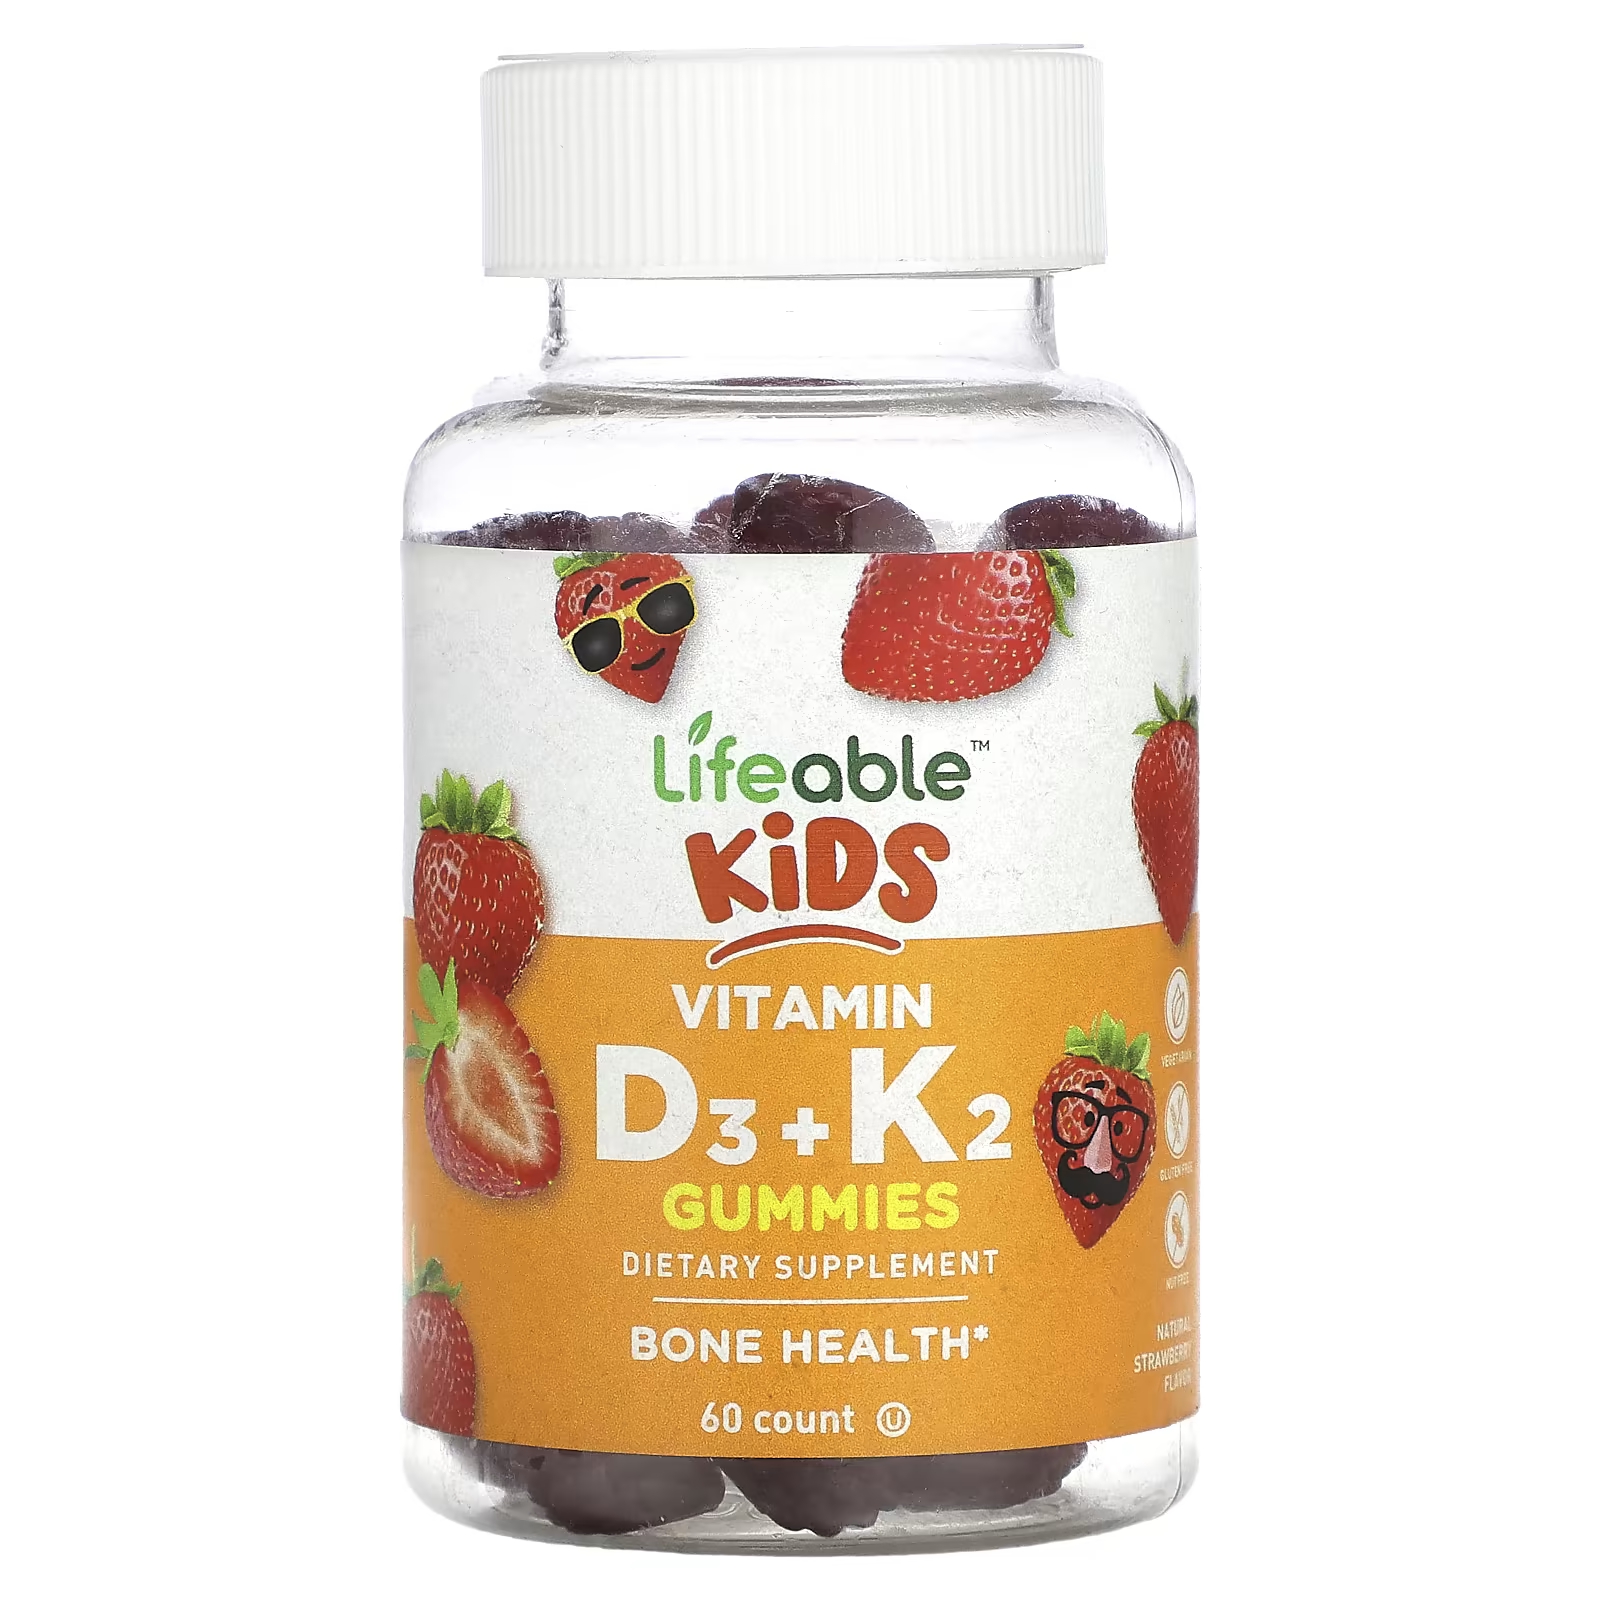 Пищевая добавка Lifeable Kids с витамином D3 + K2, натуральная клубника, 60 жевательных конфет пищевая добавка solgar ultra potency с витамином d3 клубника 60 жевательных таблеток